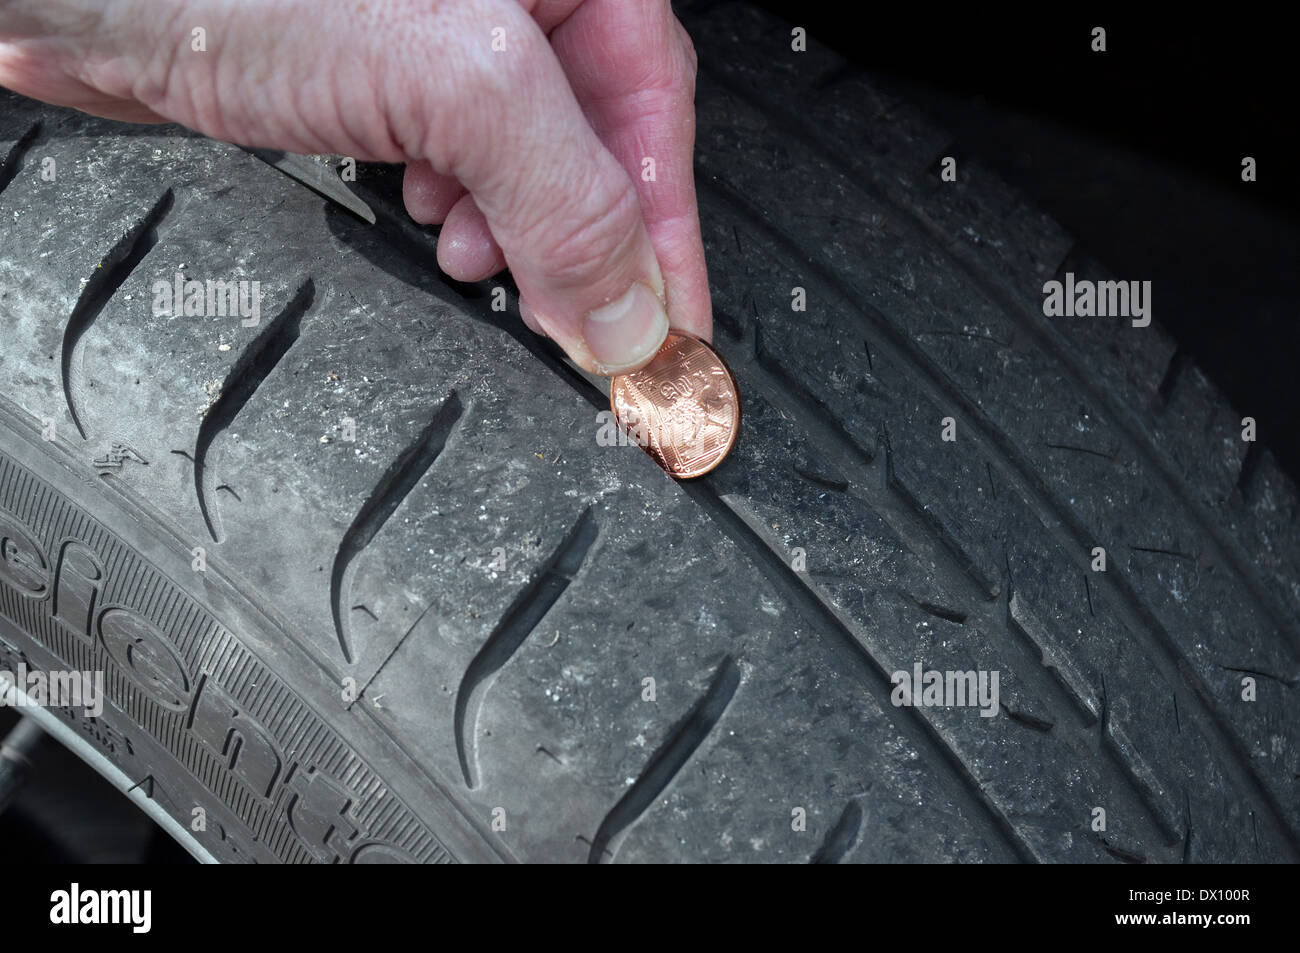 Überprüfen der Profiltiefe auf Pkw-Reifen mit einer Münze Stockfotografie -  Alamy